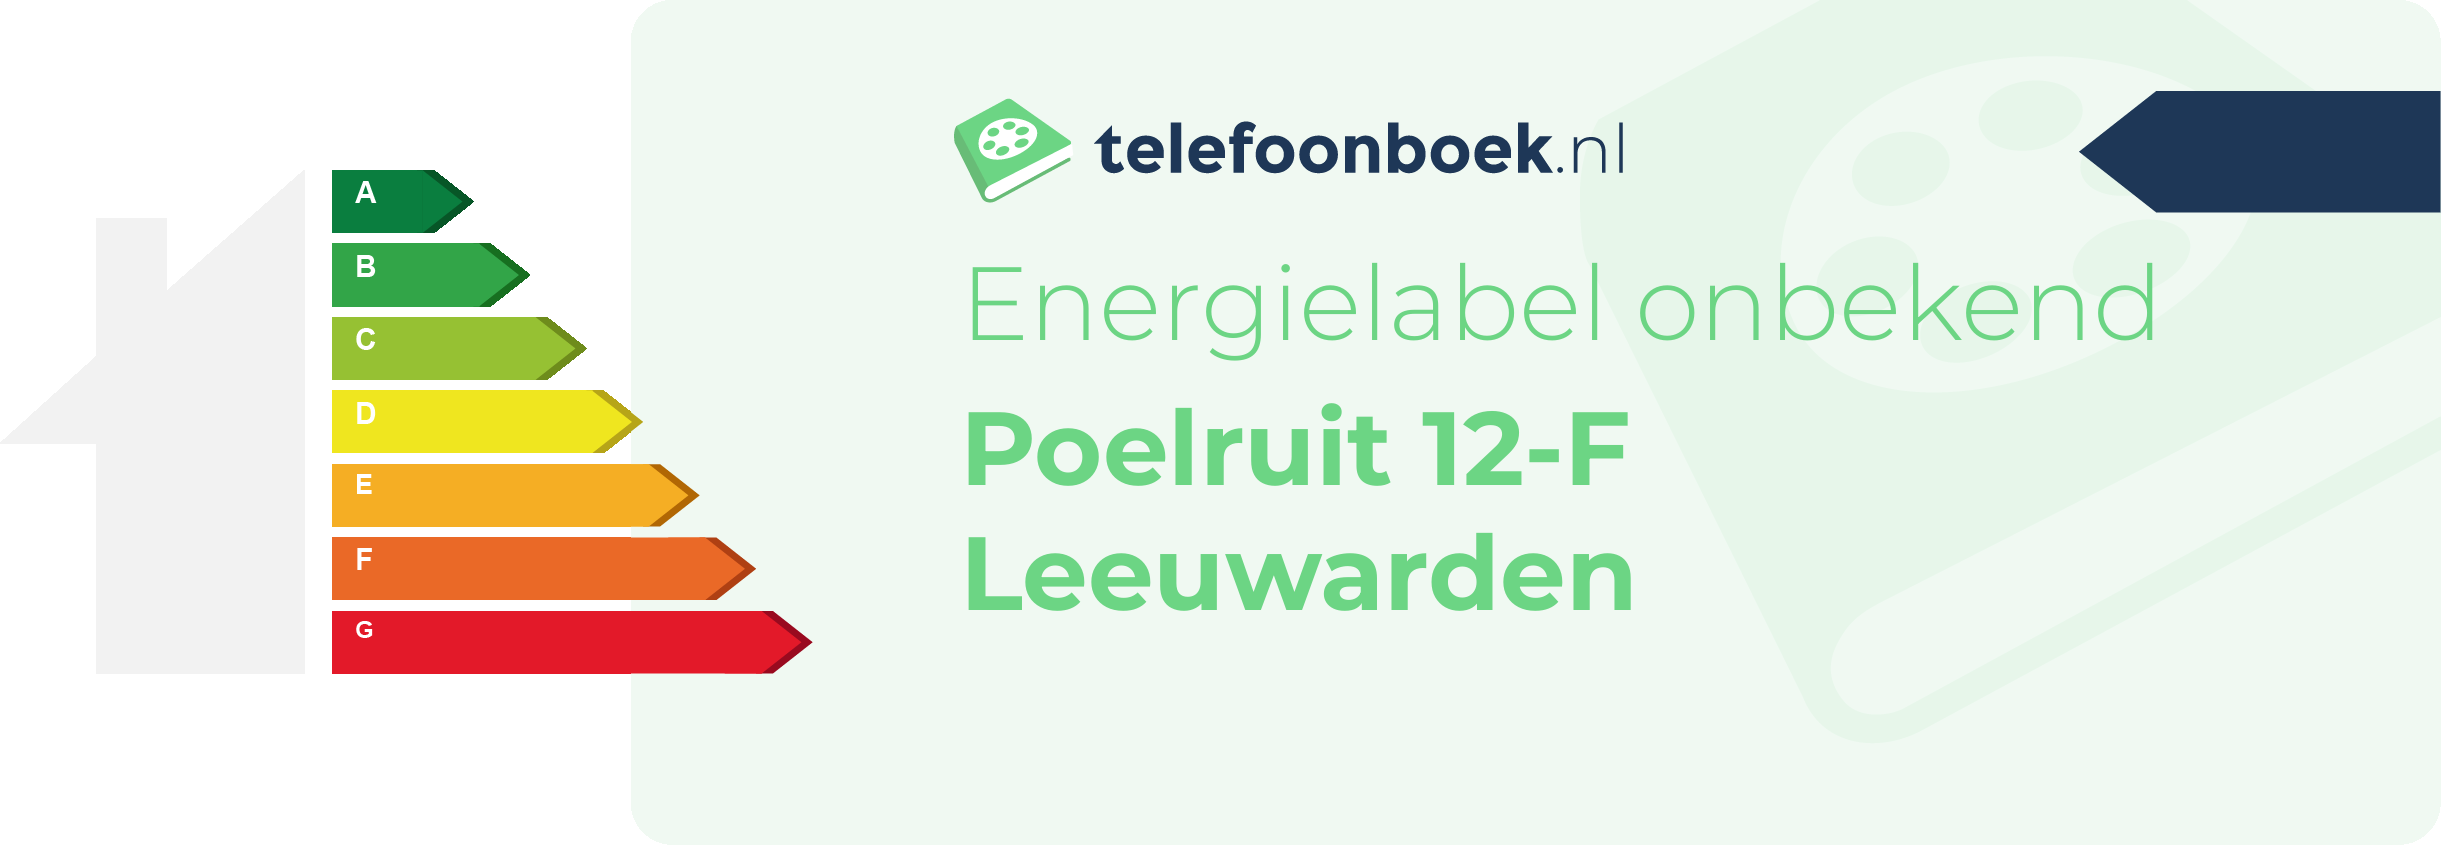 Energielabel Poelruit 12-F Leeuwarden